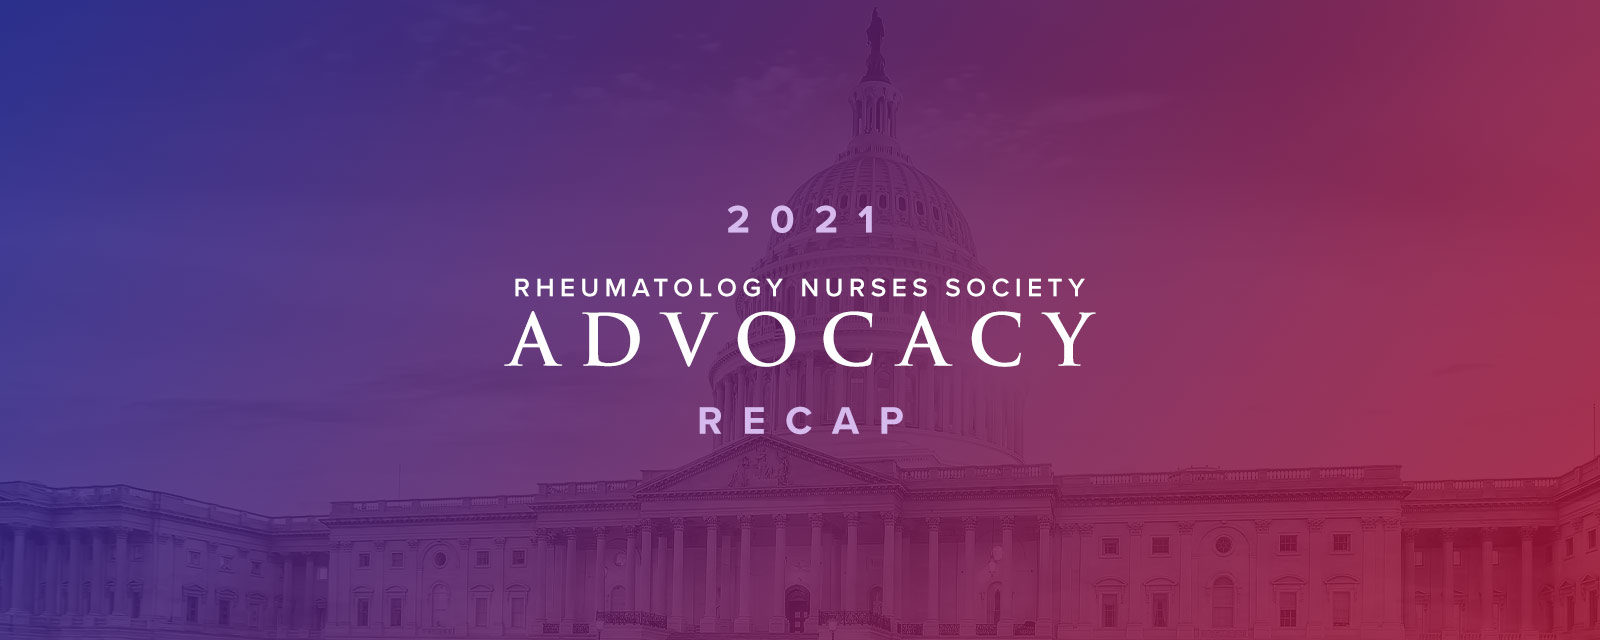 2021 Advocacy Recap